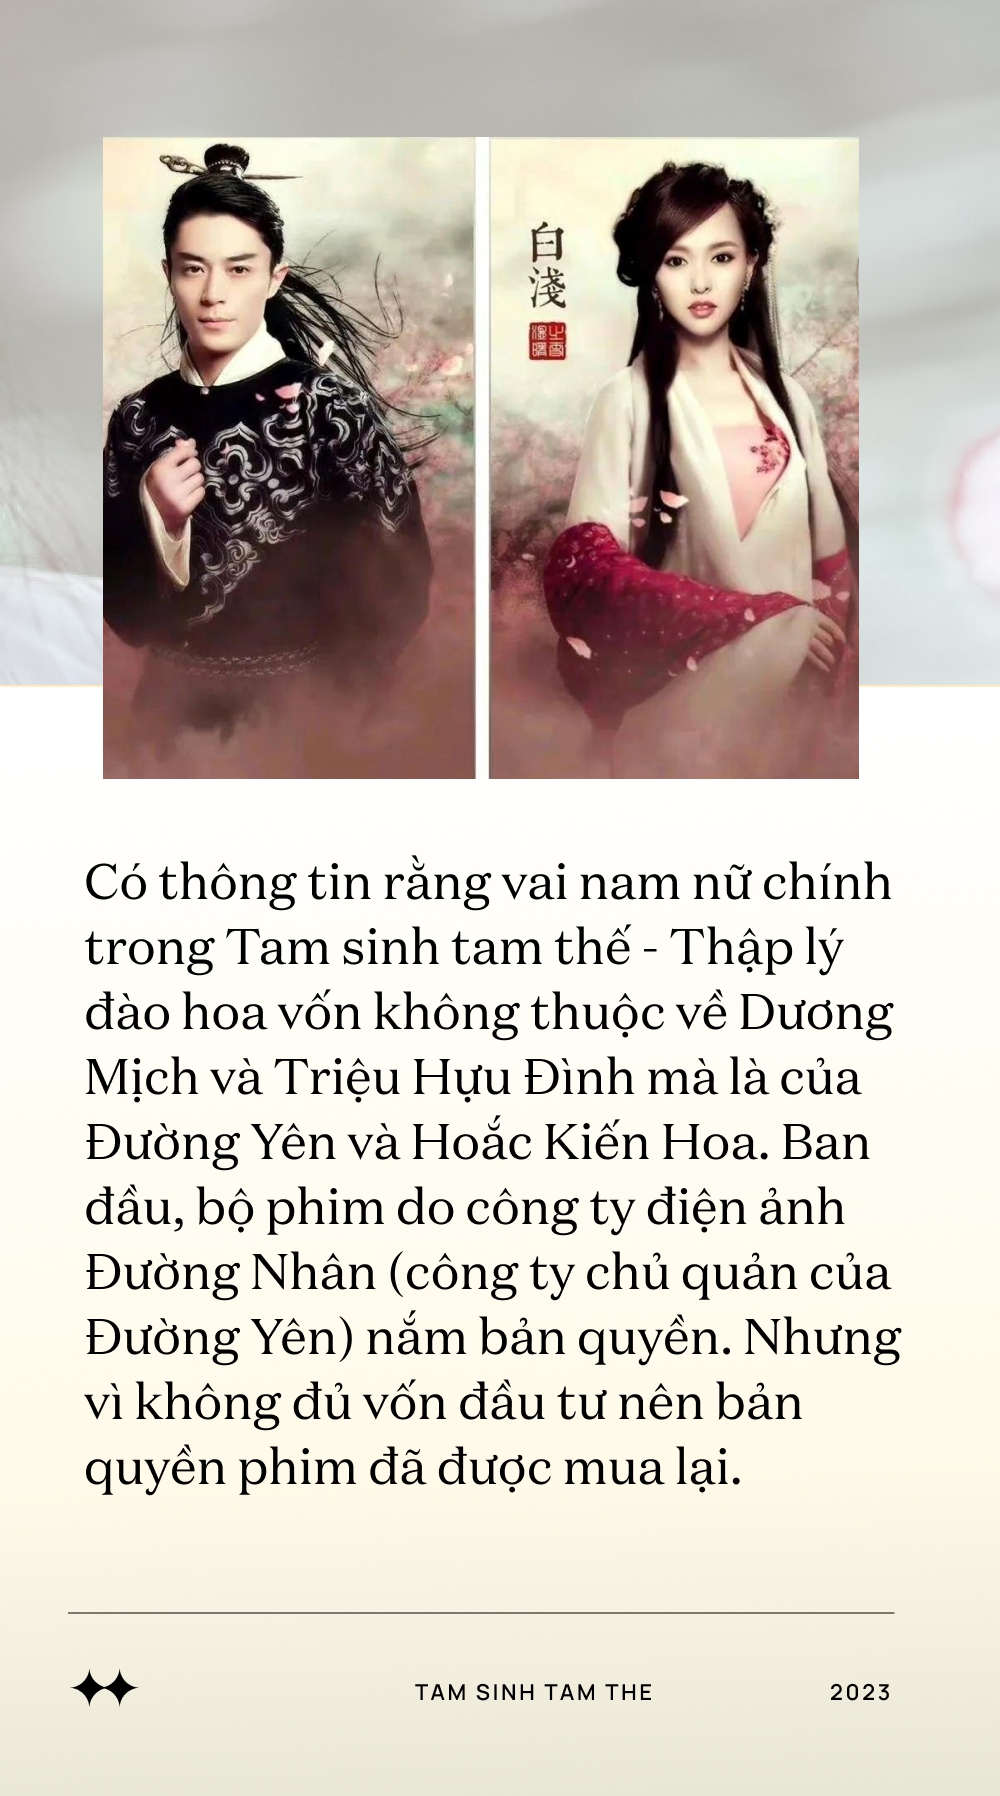 Thâm cung bí sử Thập lý đào hoa - bộ phim khiến Dương Mịch trở mặt với Đường Yên, lộ phốt ở trường quay - Ảnh 7.